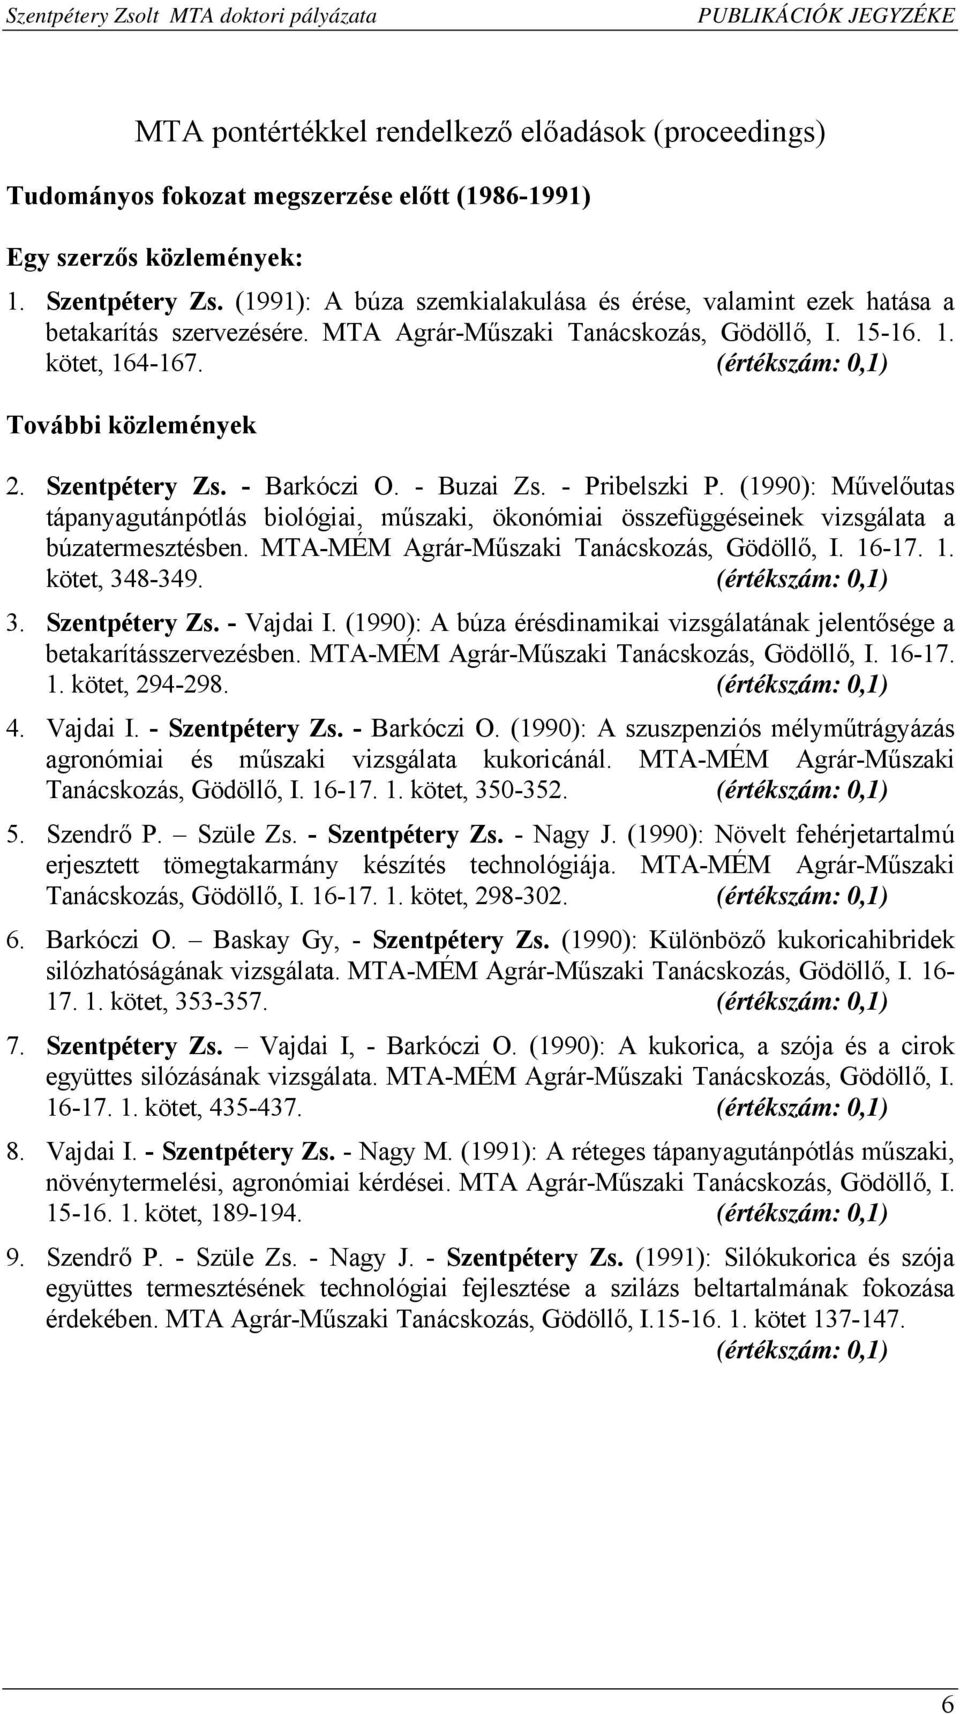 Szentpétery Zs. - Barkóczi O. - Buzai Zs. - Pribelszki P. (1990): Művelőutas tápanyagutánpótlás biológiai, műszaki, ökonómiai összefüggéseinek vizsgálata a búzatermesztésben.